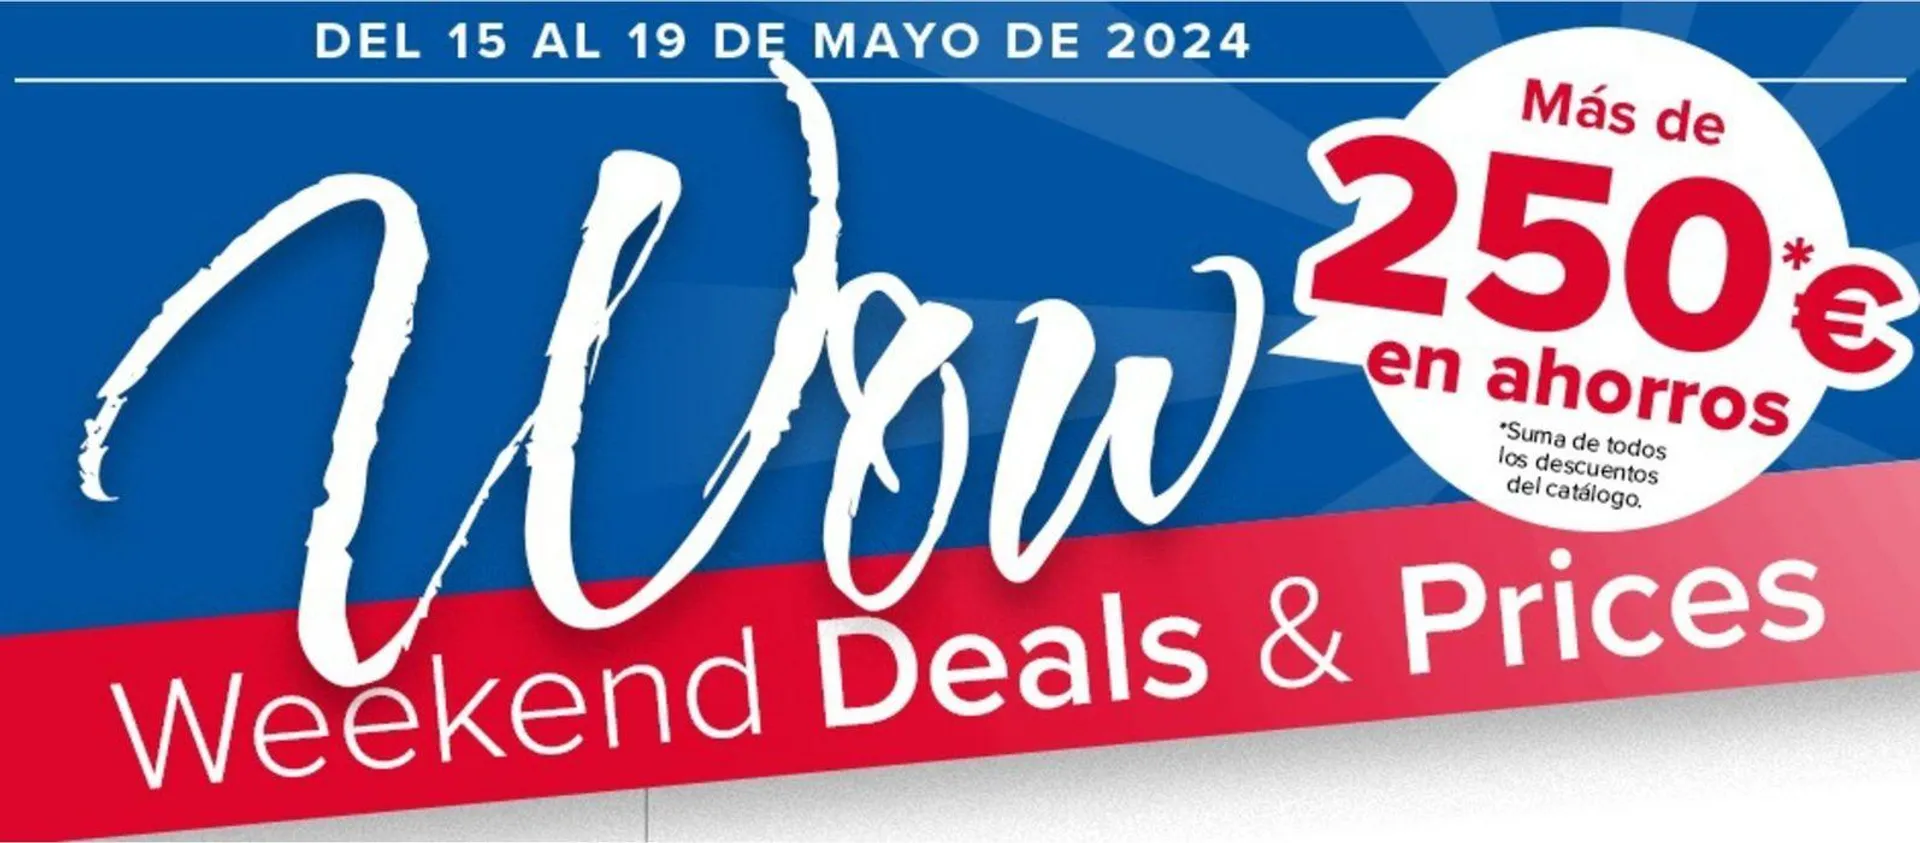 Especial Wow Deals del 15 al 19 de mayo de 2024 - 1